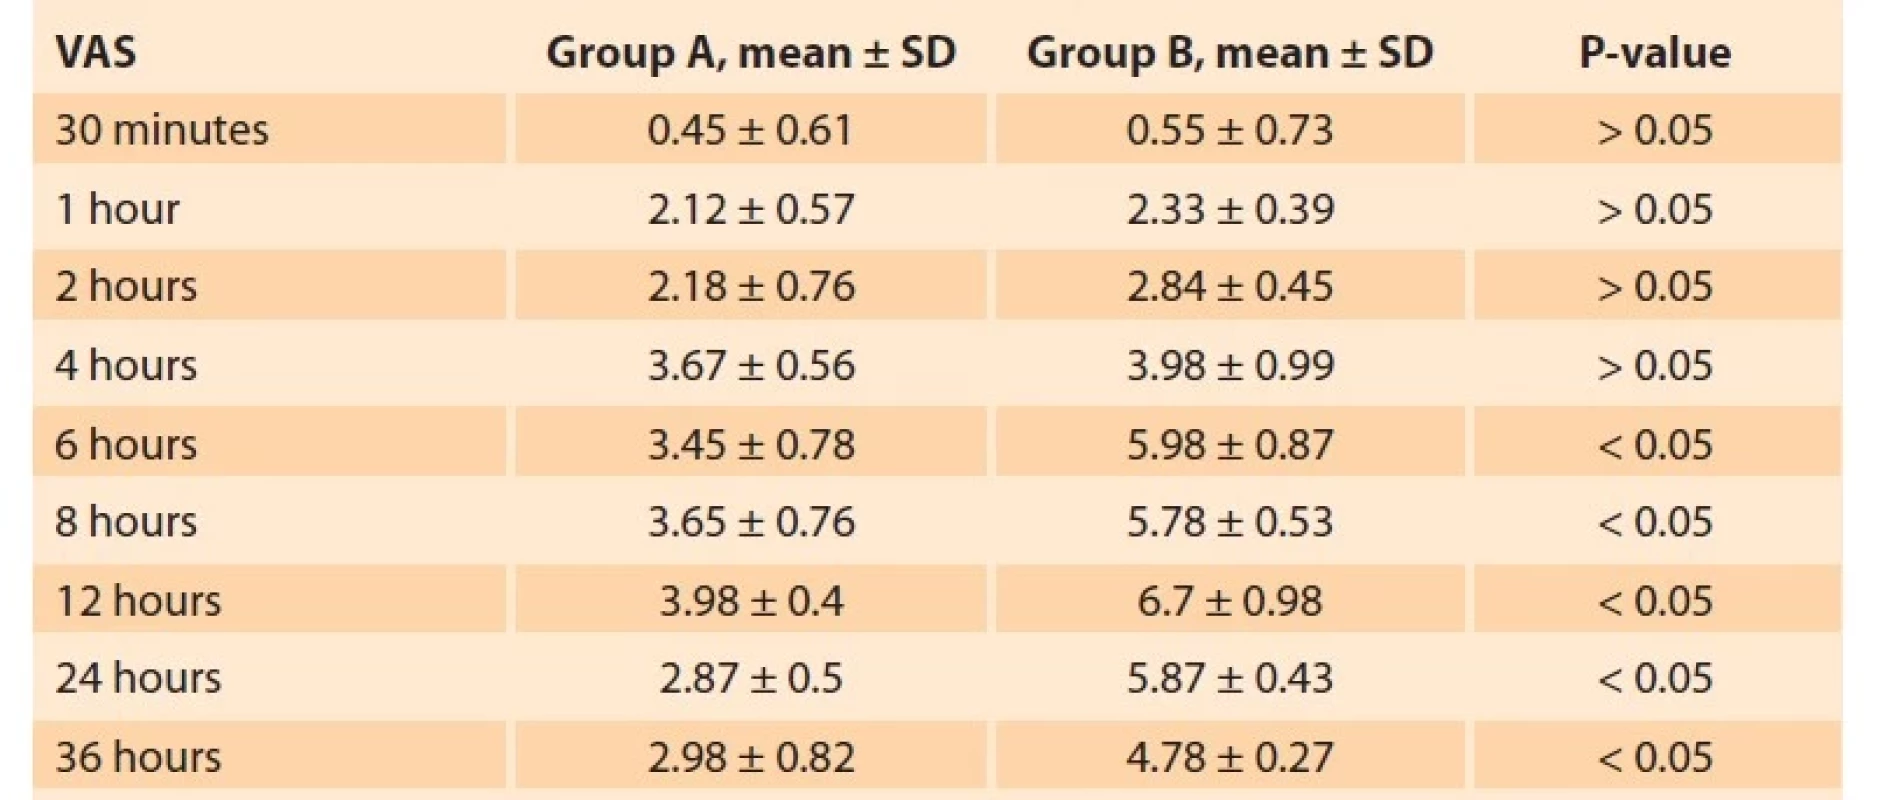 Comparison between the two studied groups regarding VAS.<br>
Tab. 3. Srovnání mezi dvěma zkoumanými skupinami z hlediska VAS.